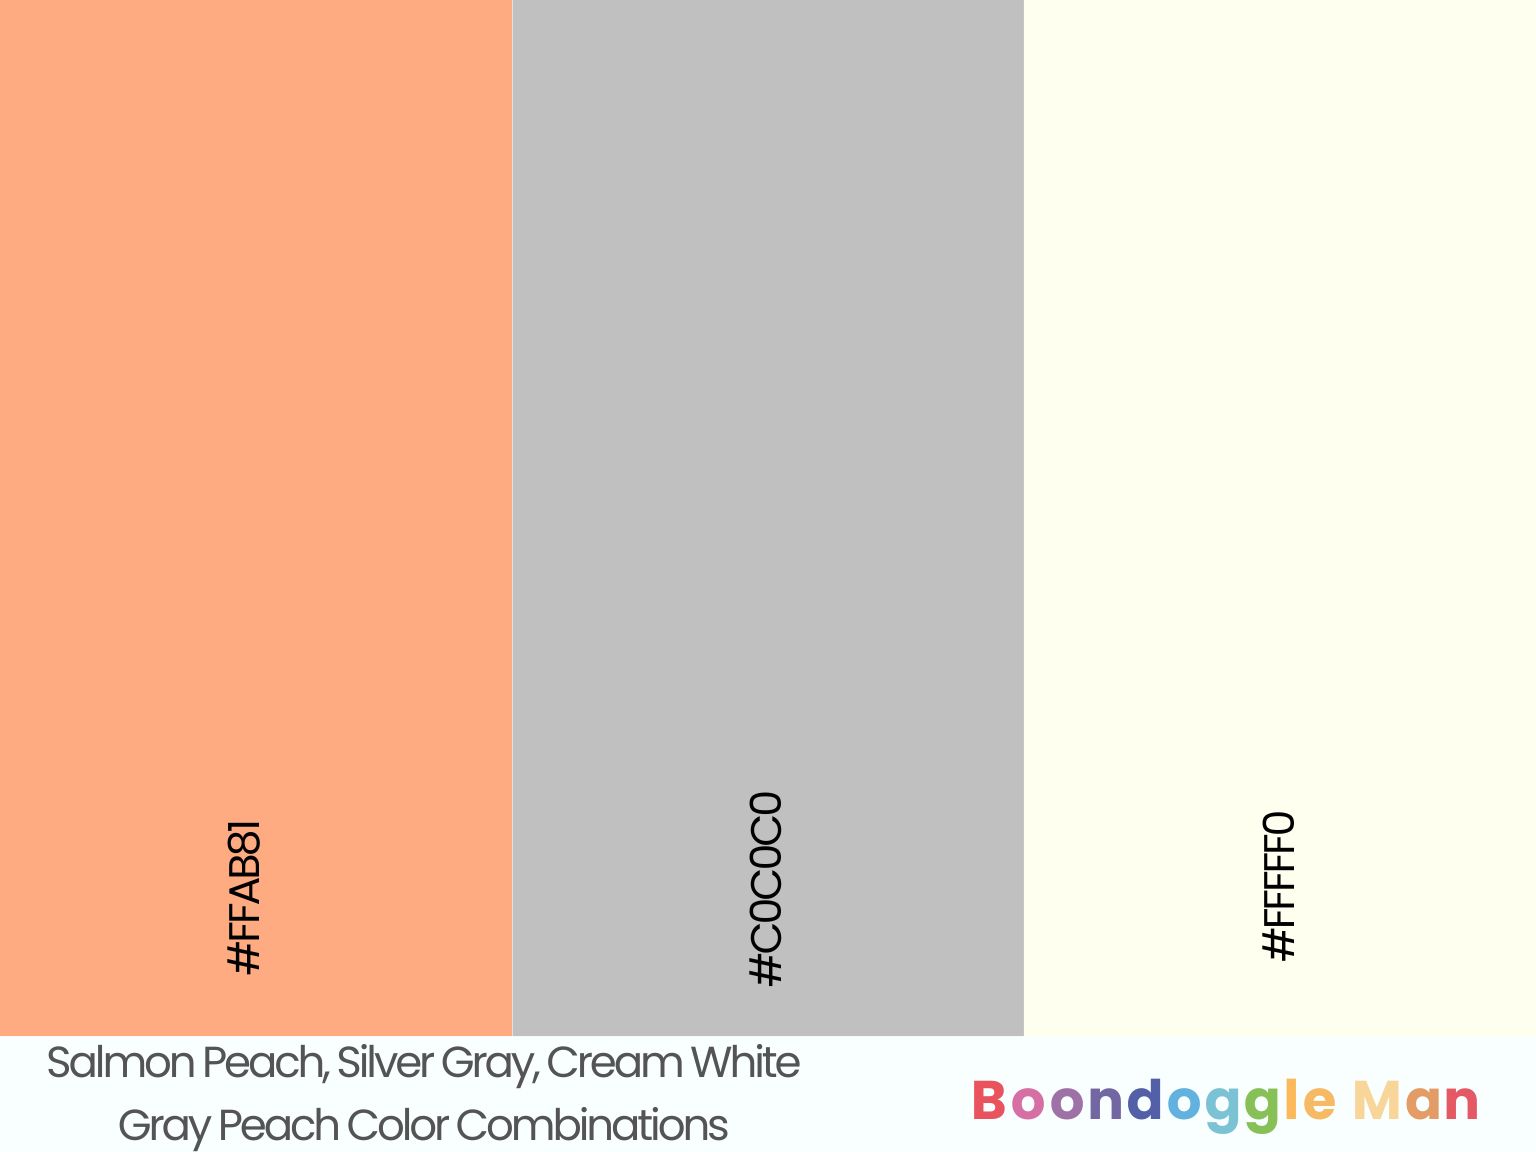 Salmon Peach, Silver Gray, Cream White